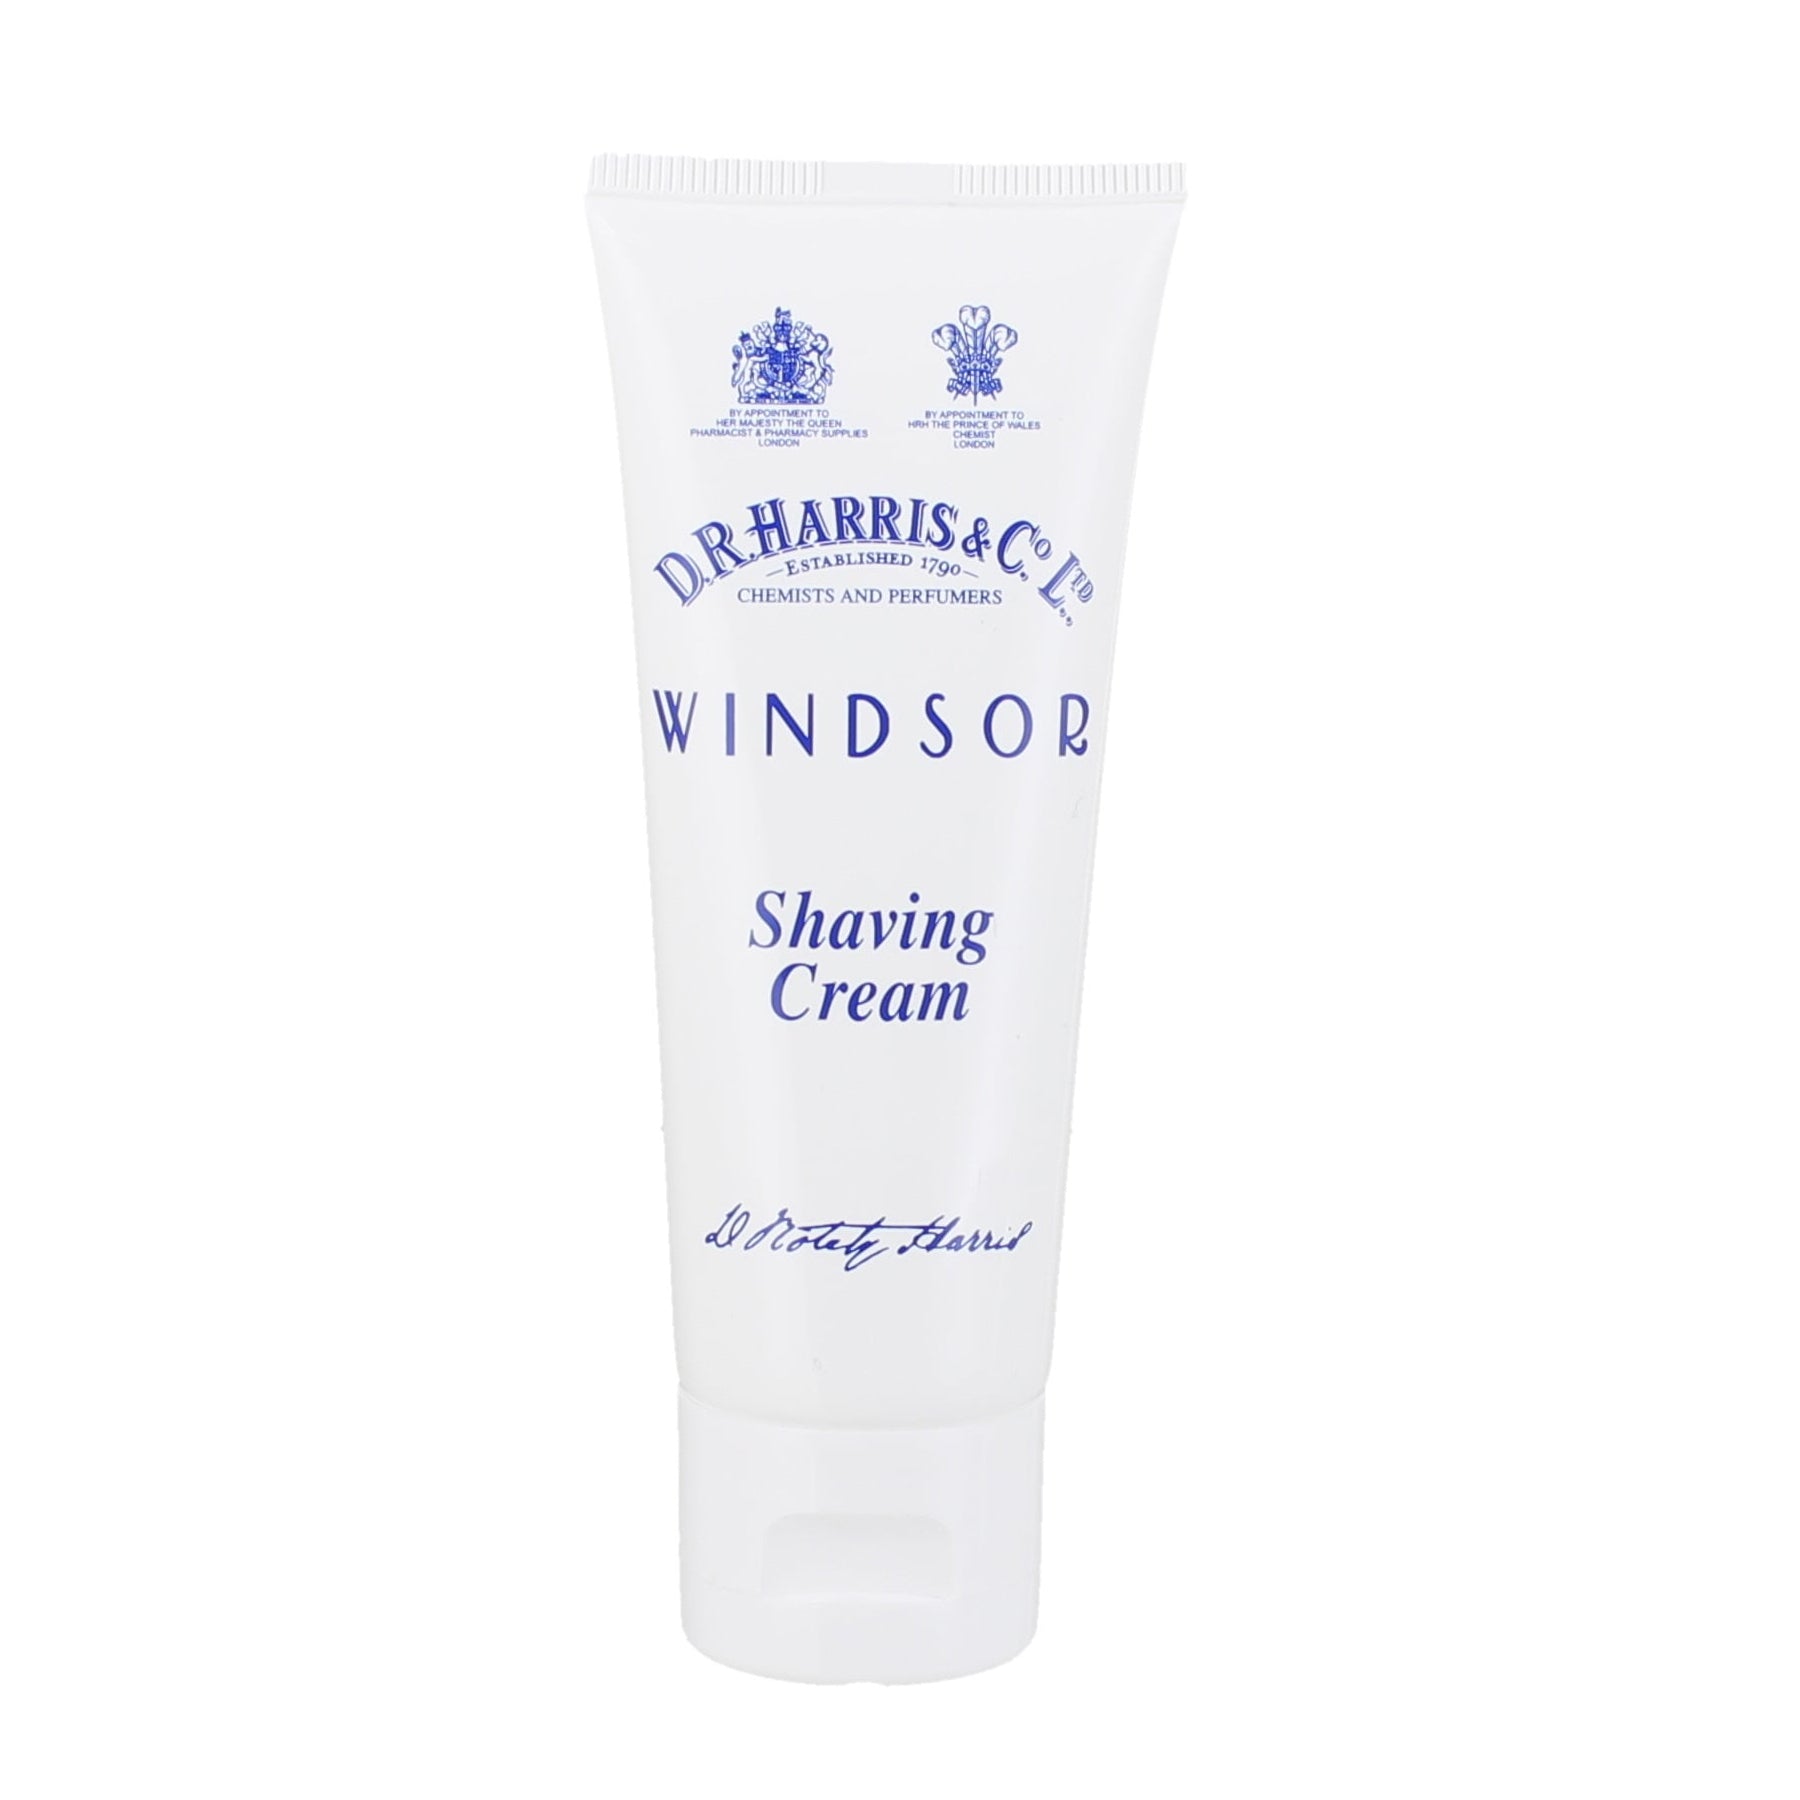 Windsor Shaving Cream Tube 75g